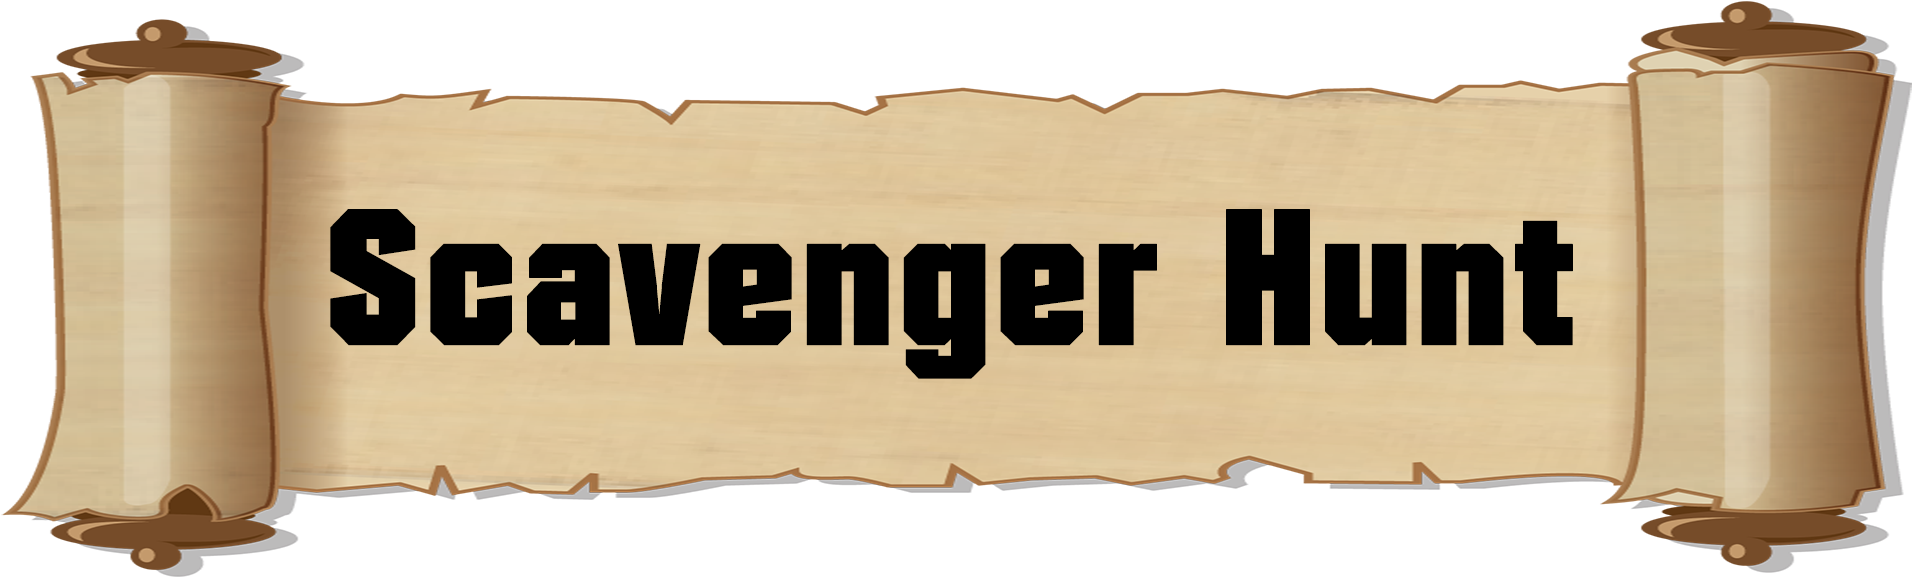 Scavenger Hunt Banner Graphic PNG